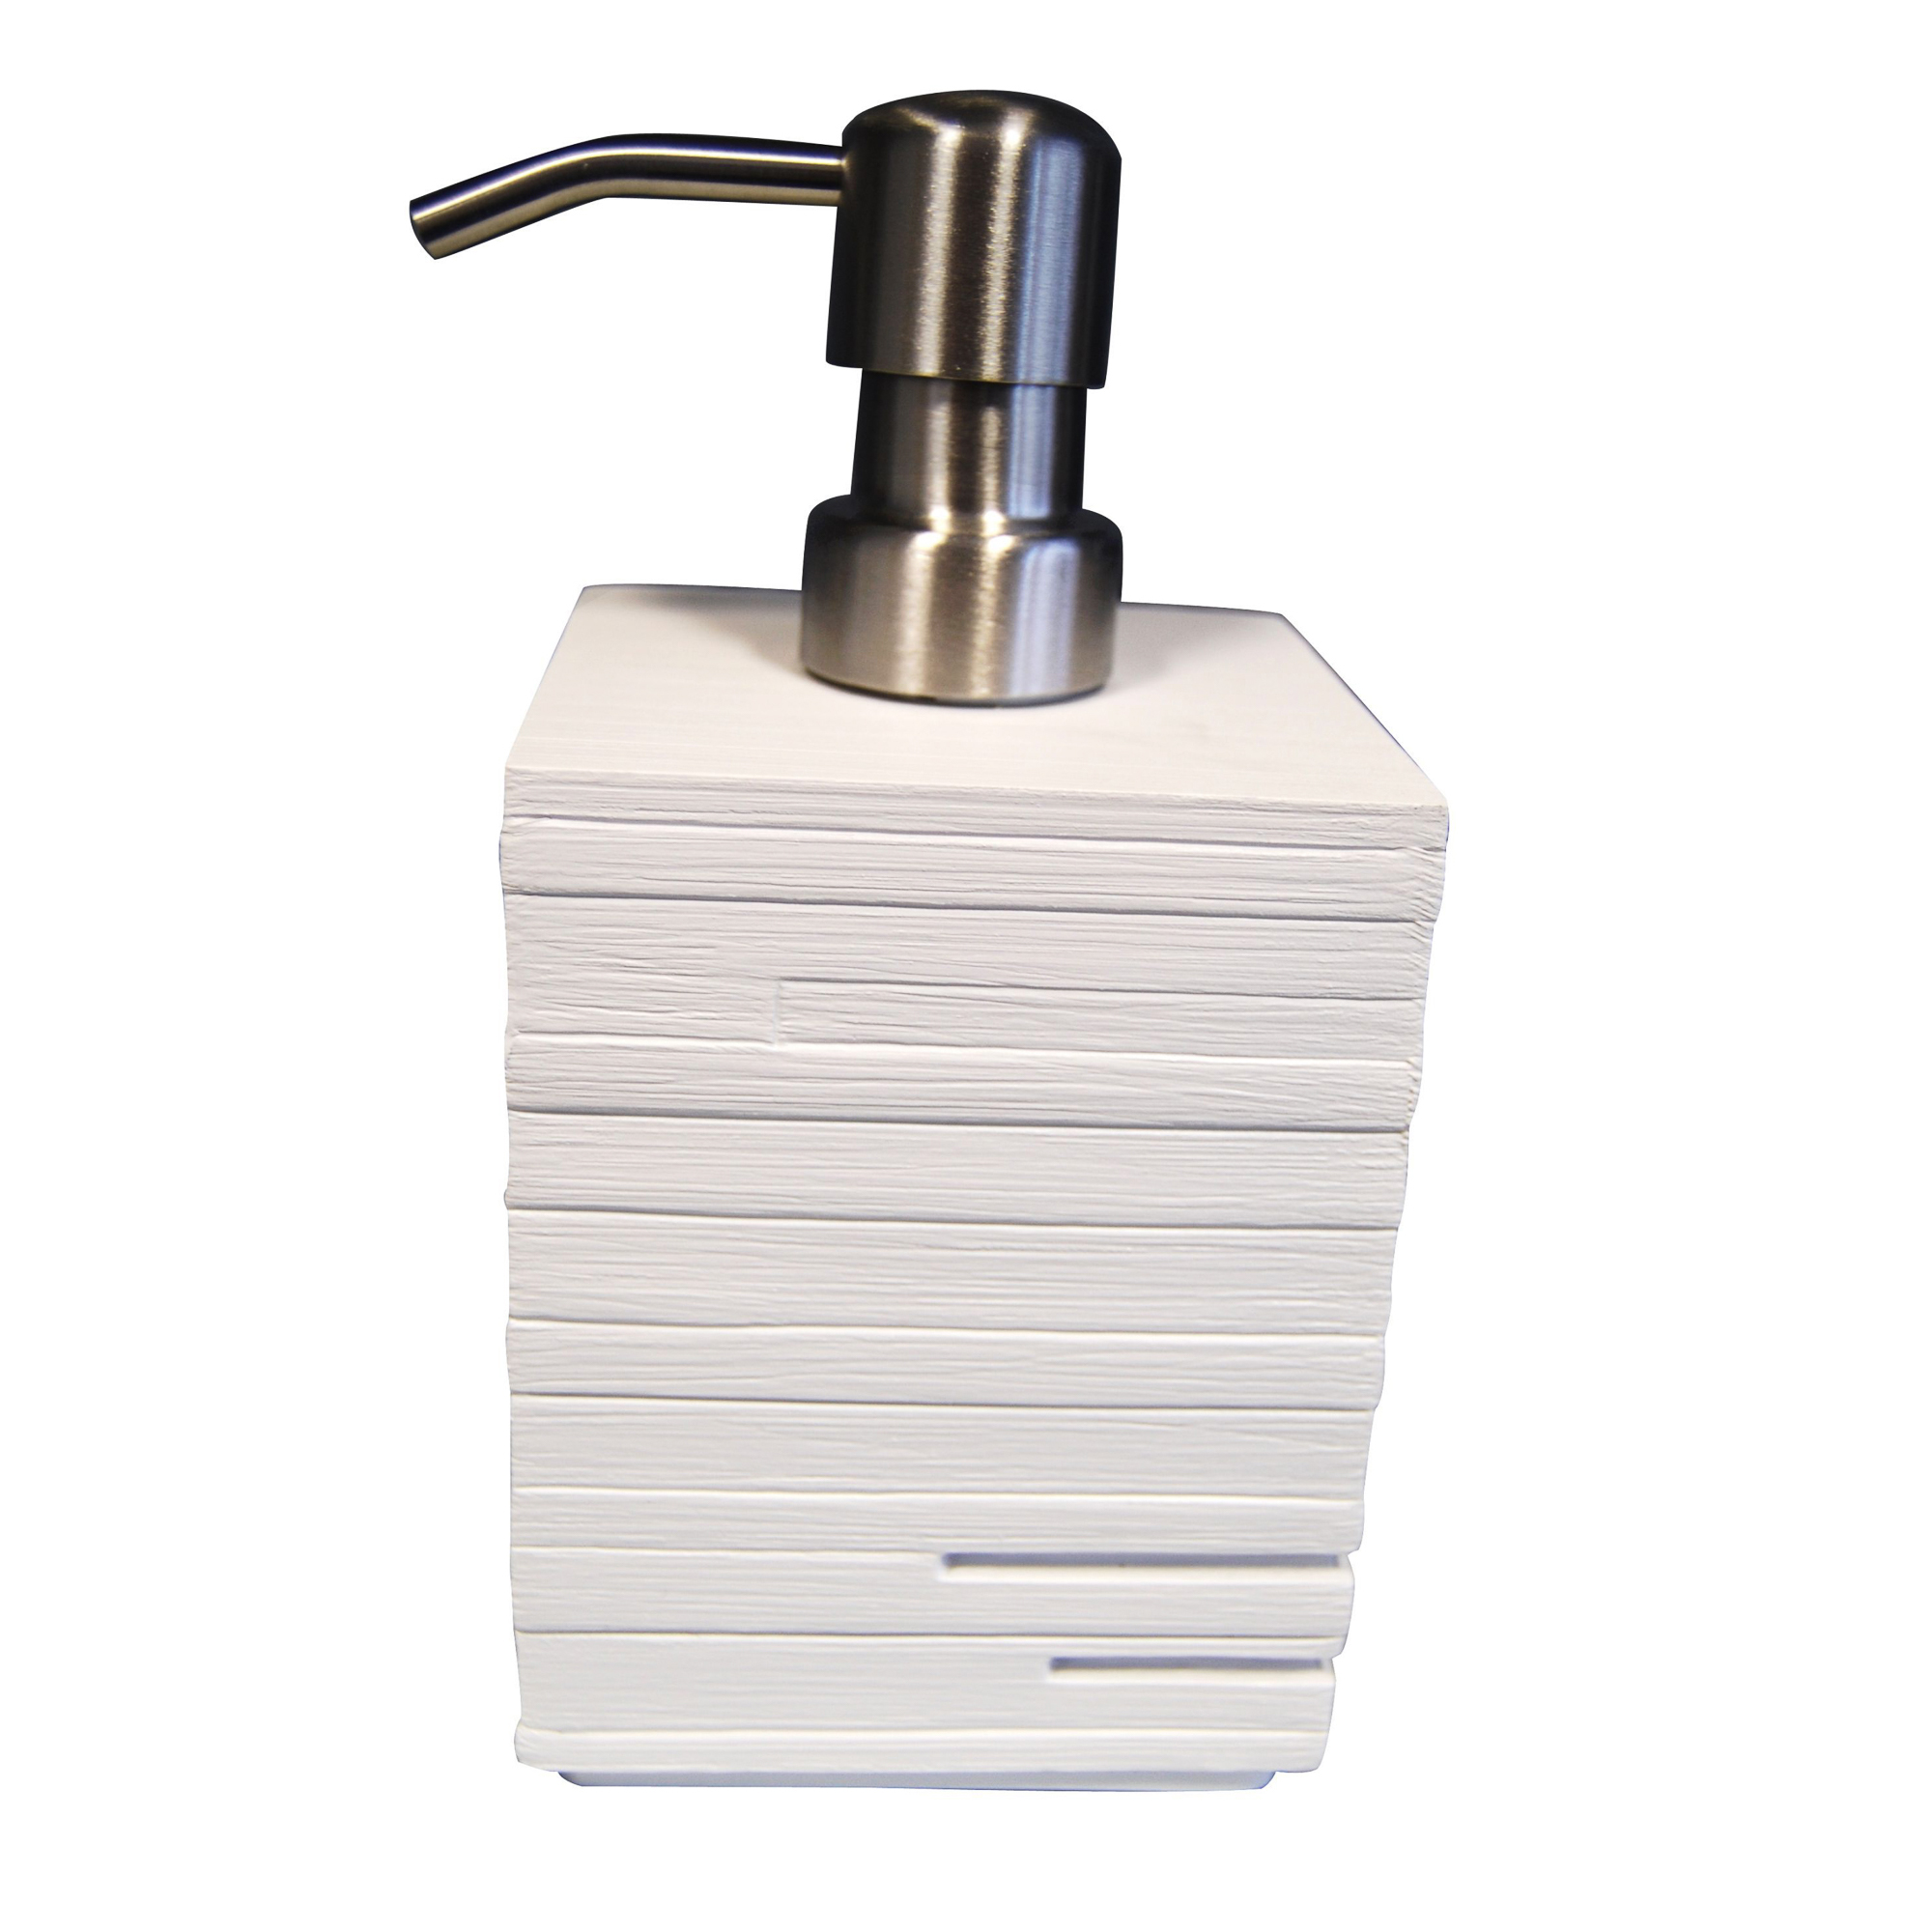 Дозатор для жидкого мыла Brick белый Ridder дозатор для жидкого мыла ridder brick 22150527 серебро